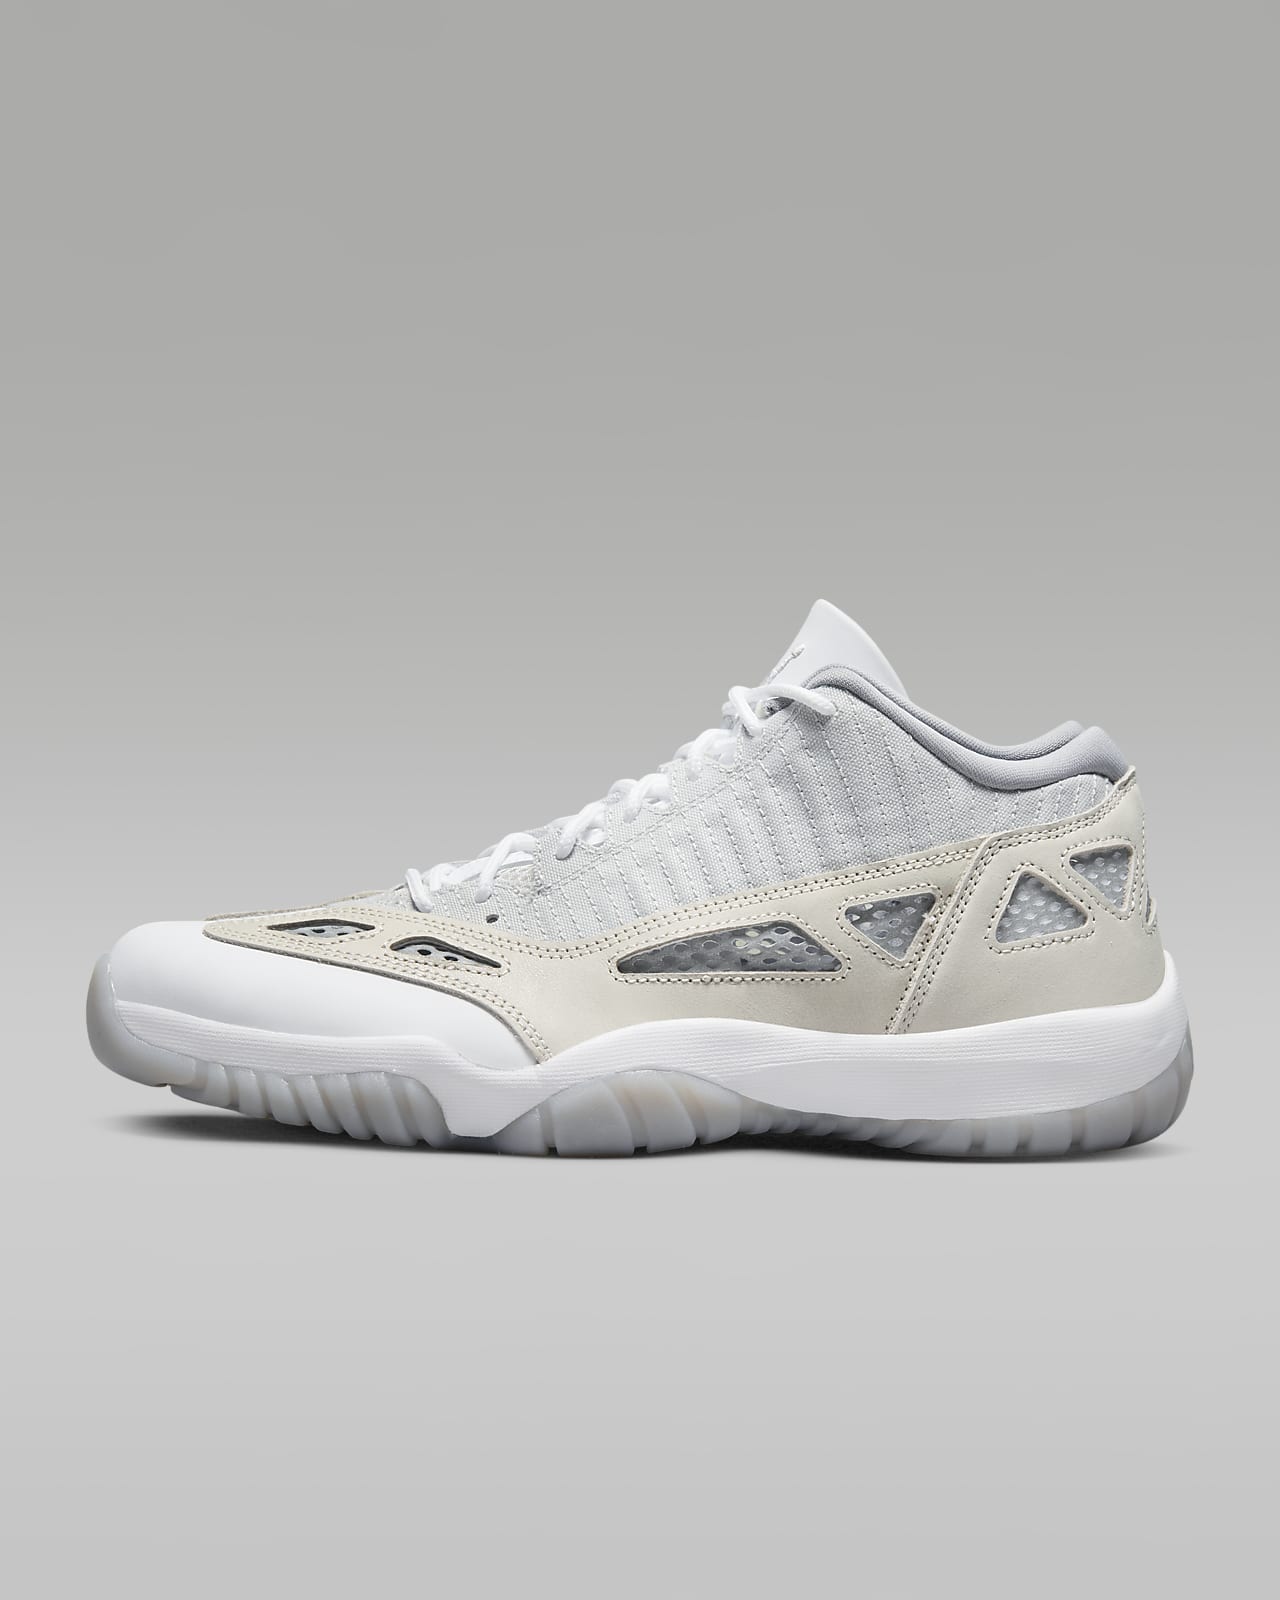 Air Jordan 11 Retro Low IE Men's Shoes. Nike LU